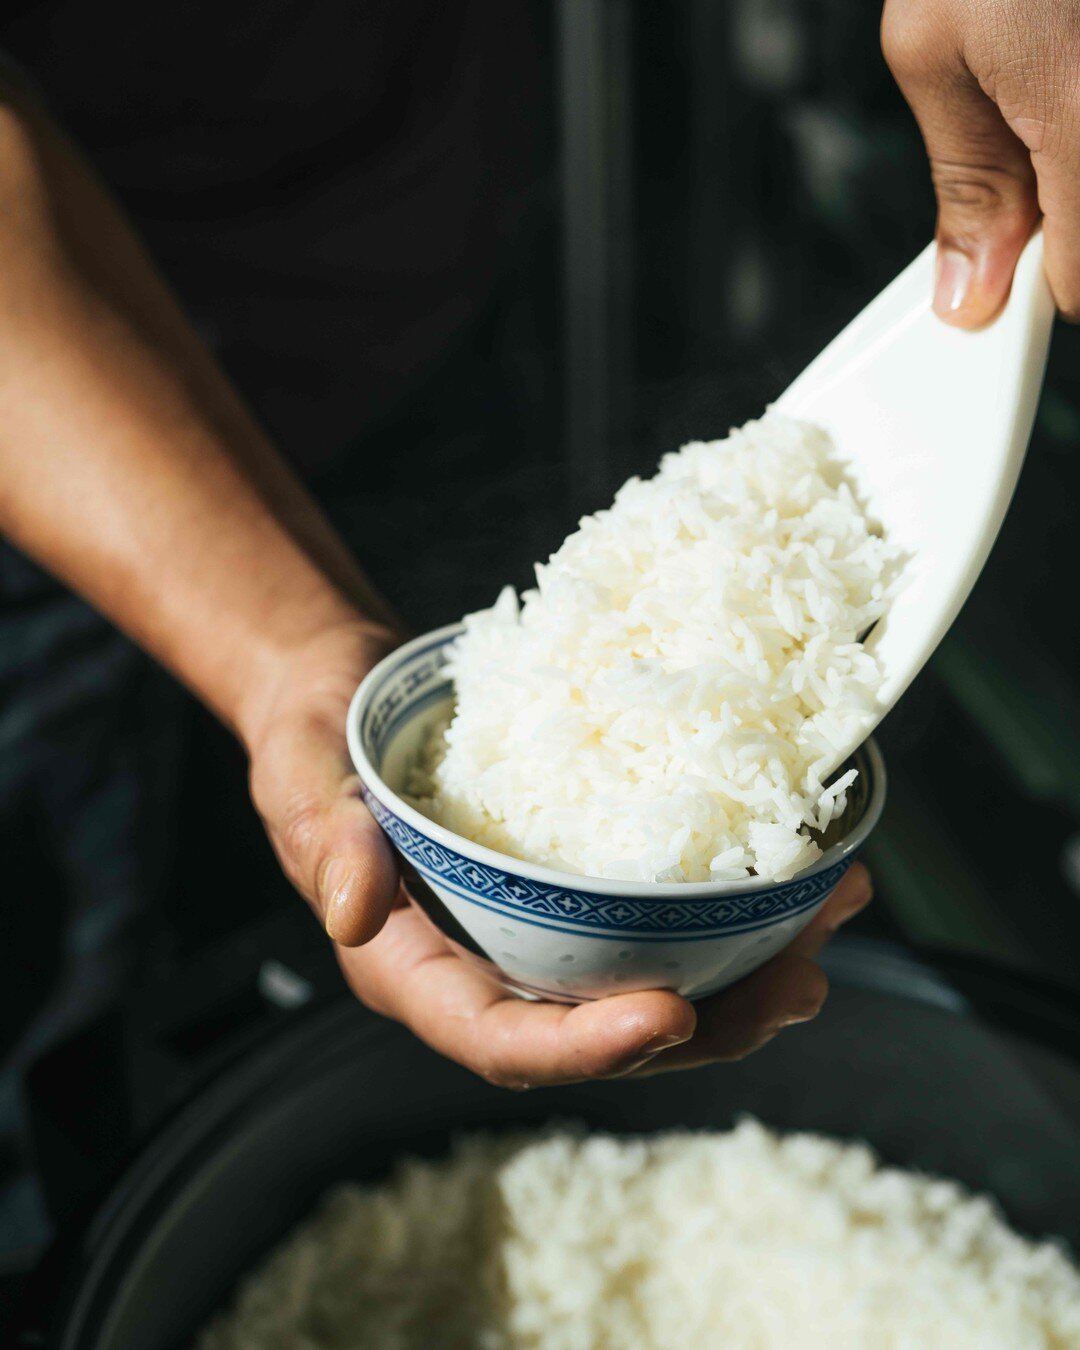 H&aacute; dias em que basta uma simples ta&ccedil;a do nosso arroz arom&aacute;tico - a acompanhar um caril - para te transportar diretamente para a Tail&acirc;ndia 🤤
🥢
Some days all it takes is a simple bowl of our aromatic rice - as a side to a d